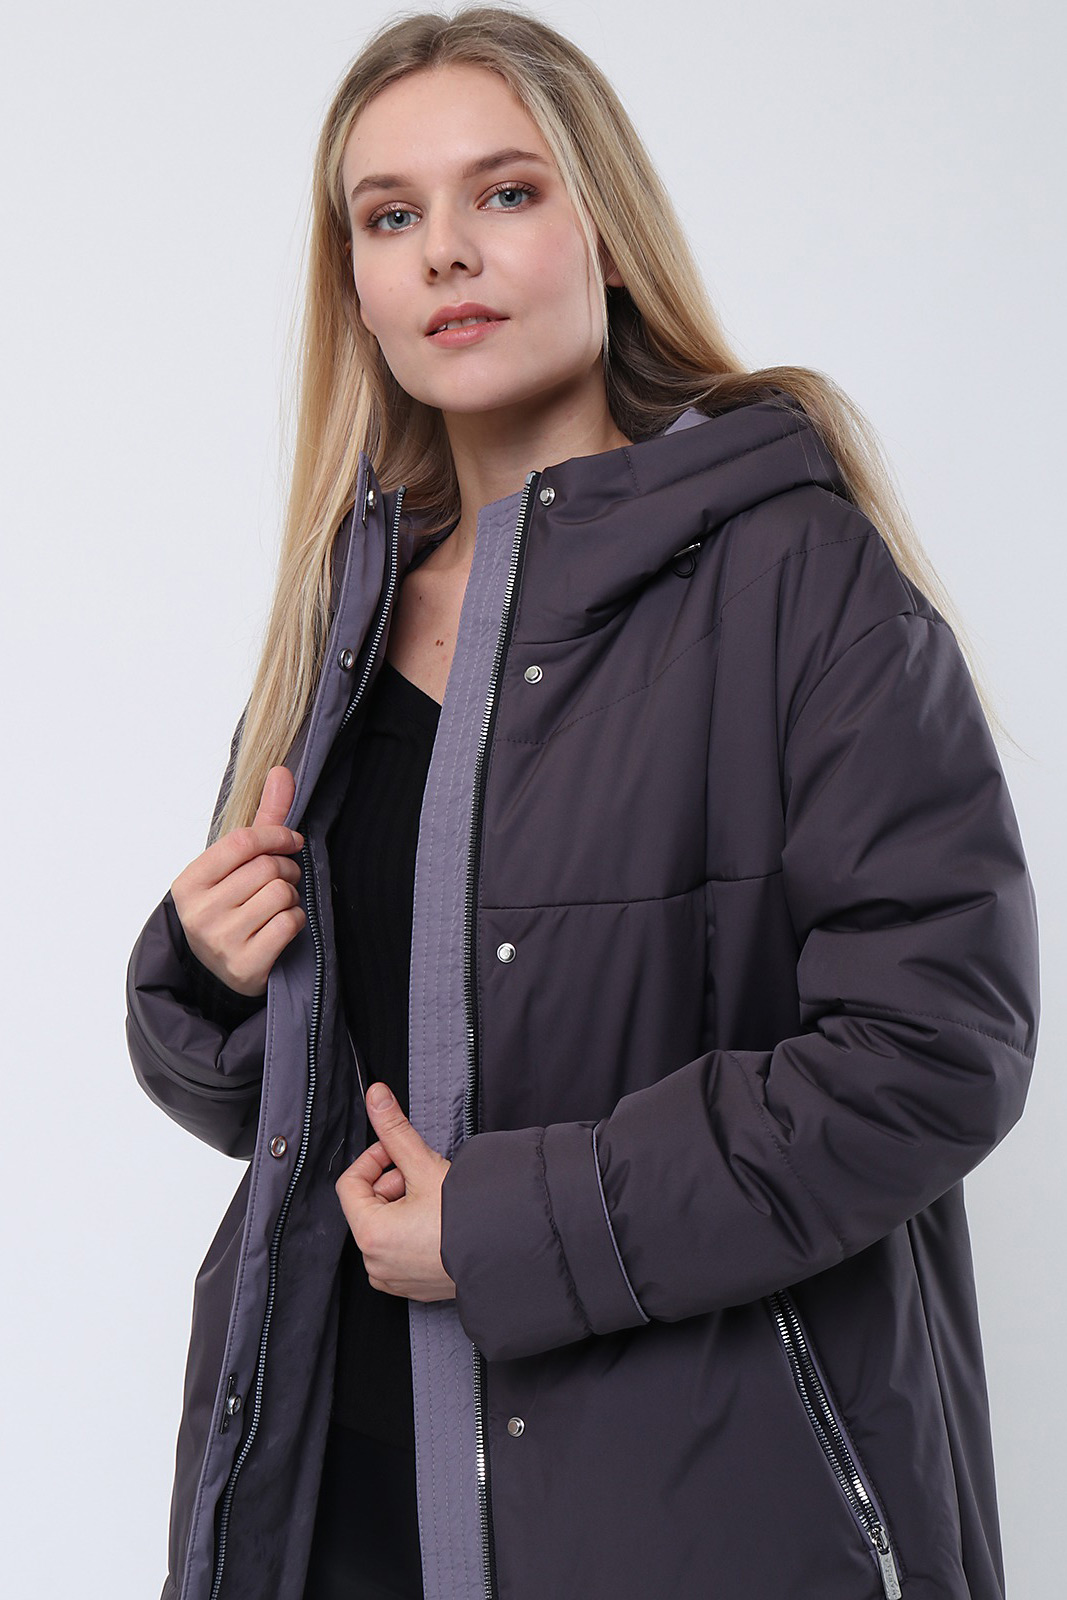 Женские куртки на синтепоне купить СПб в интернет-магазине Dream White